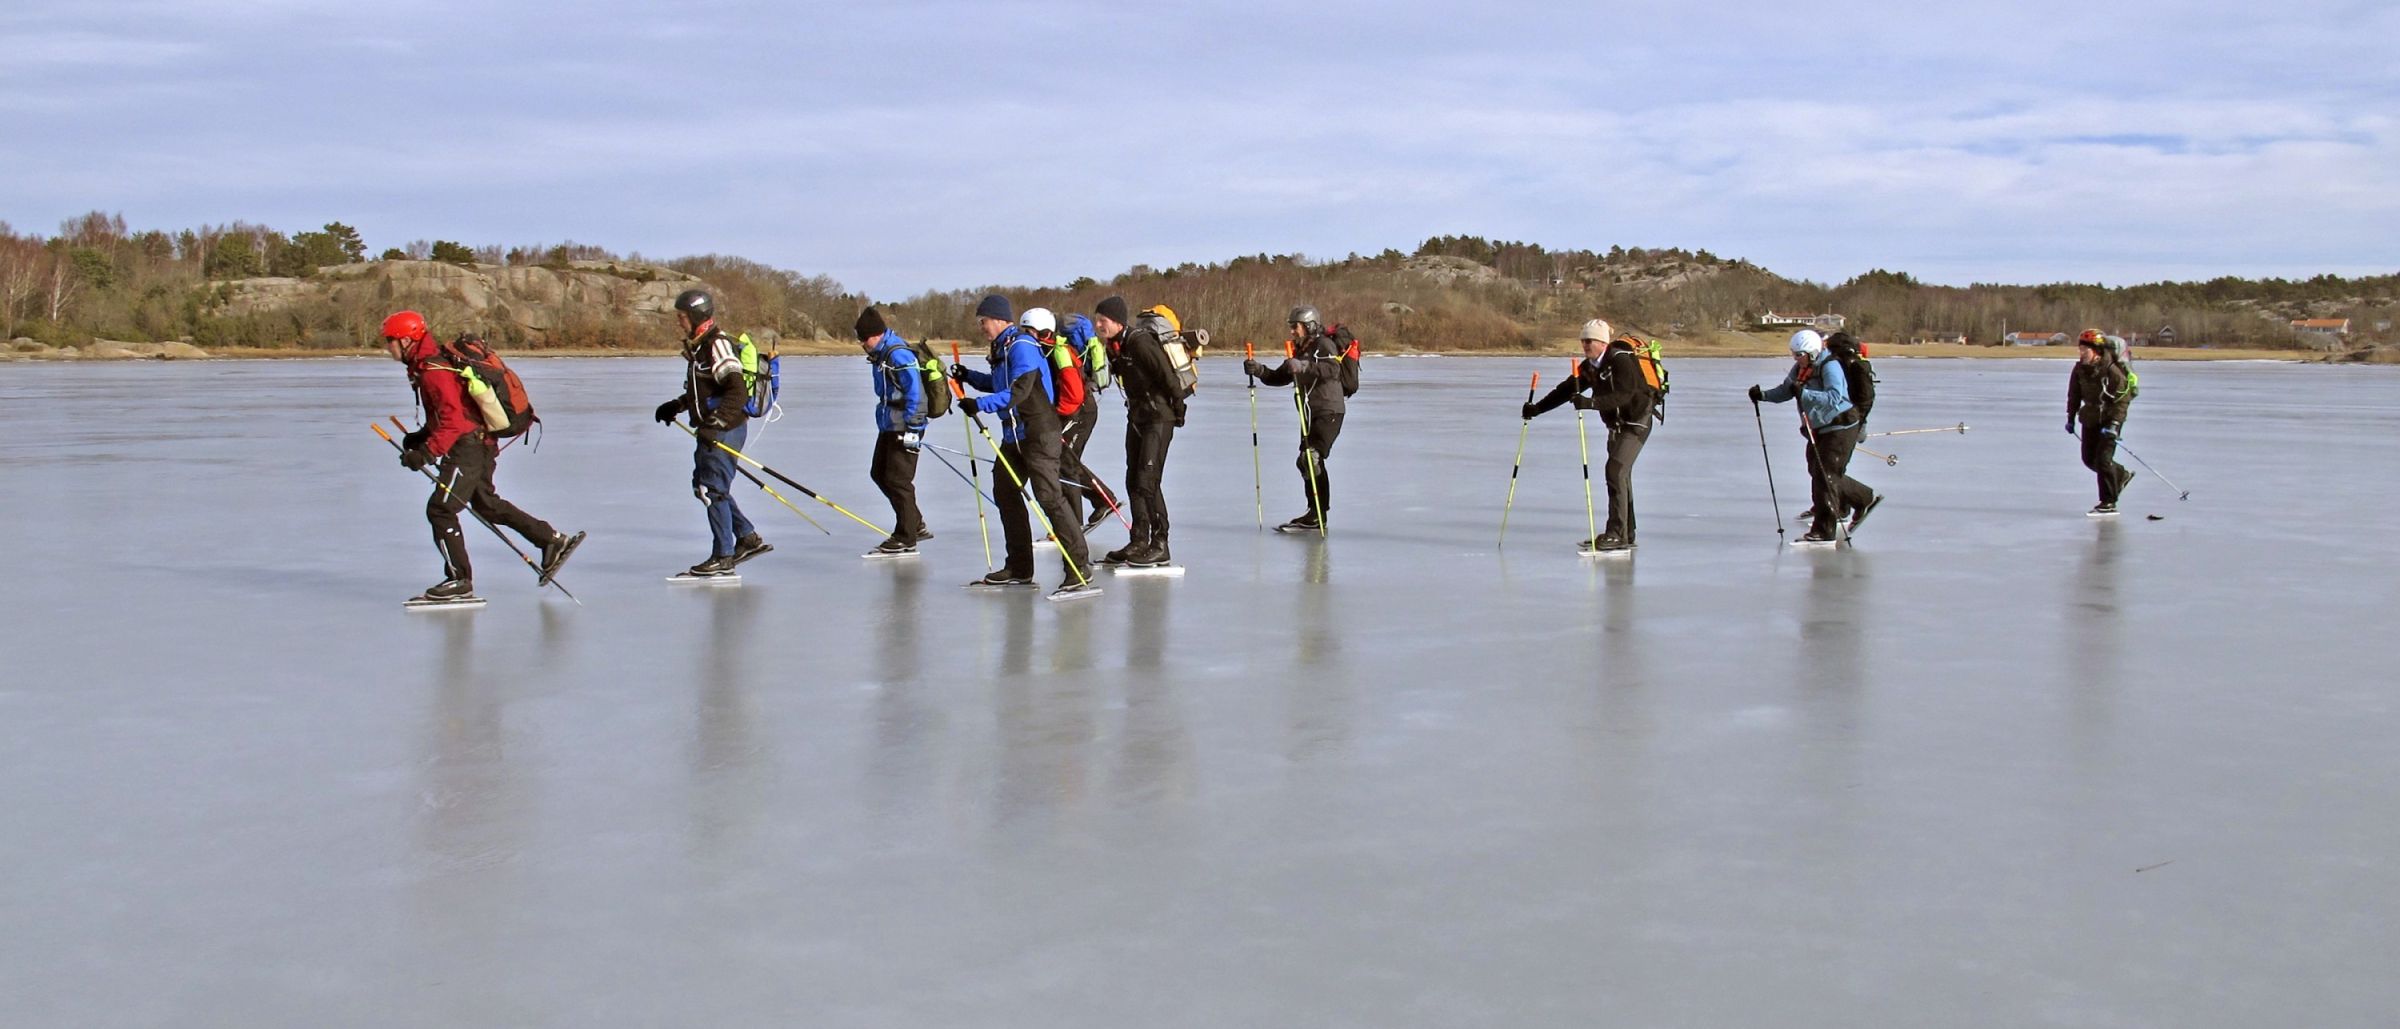 Unsere Gruppe auf dem Eis